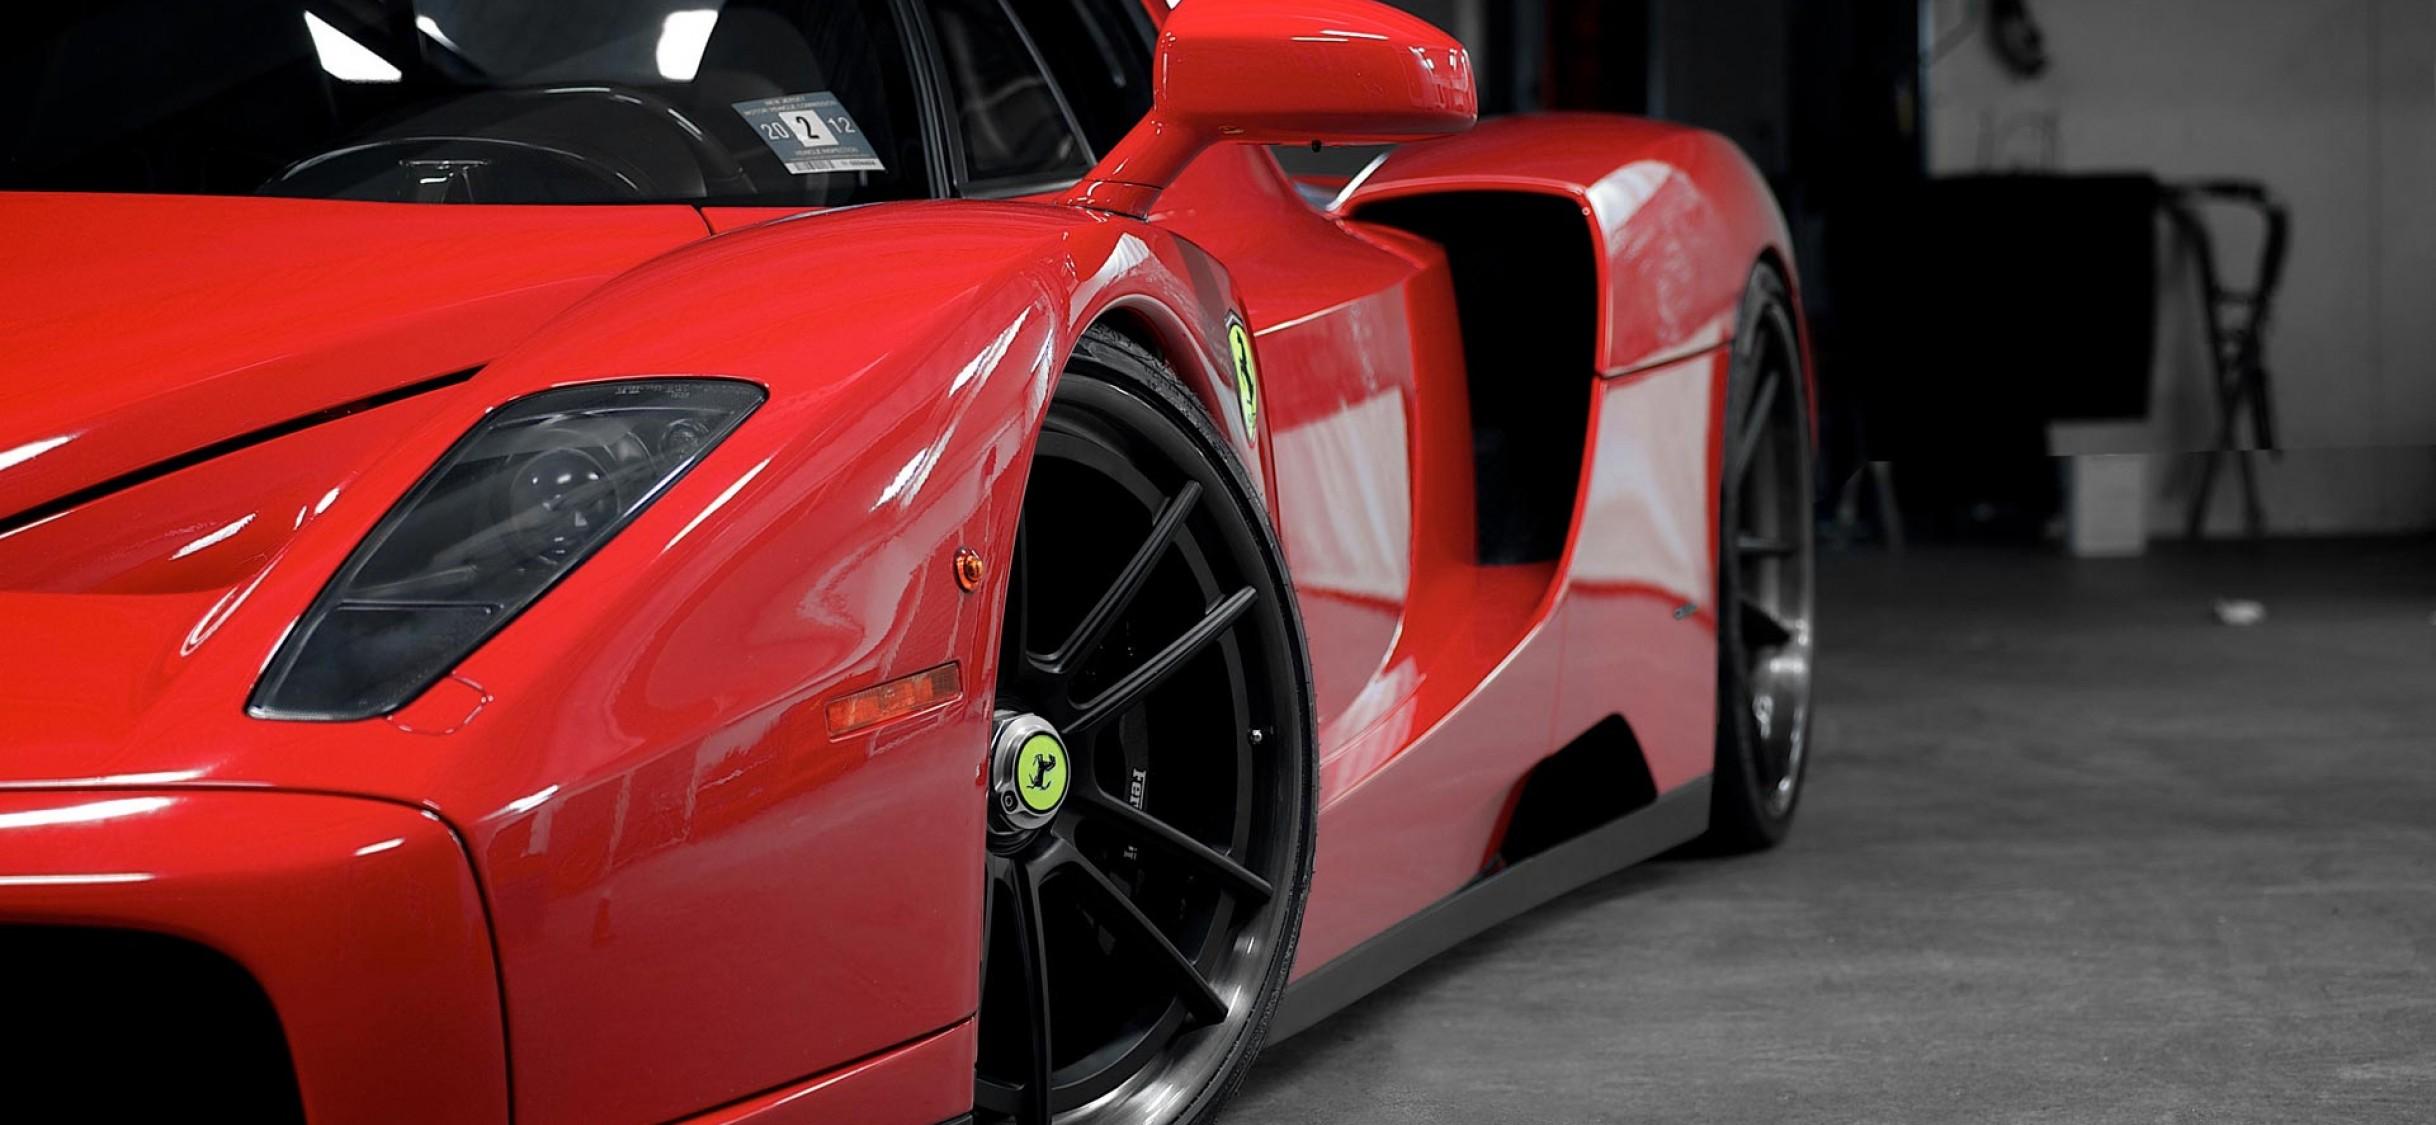 Download Enzo Ferrari Headlight Wheels HD Wallpaper for Desktop